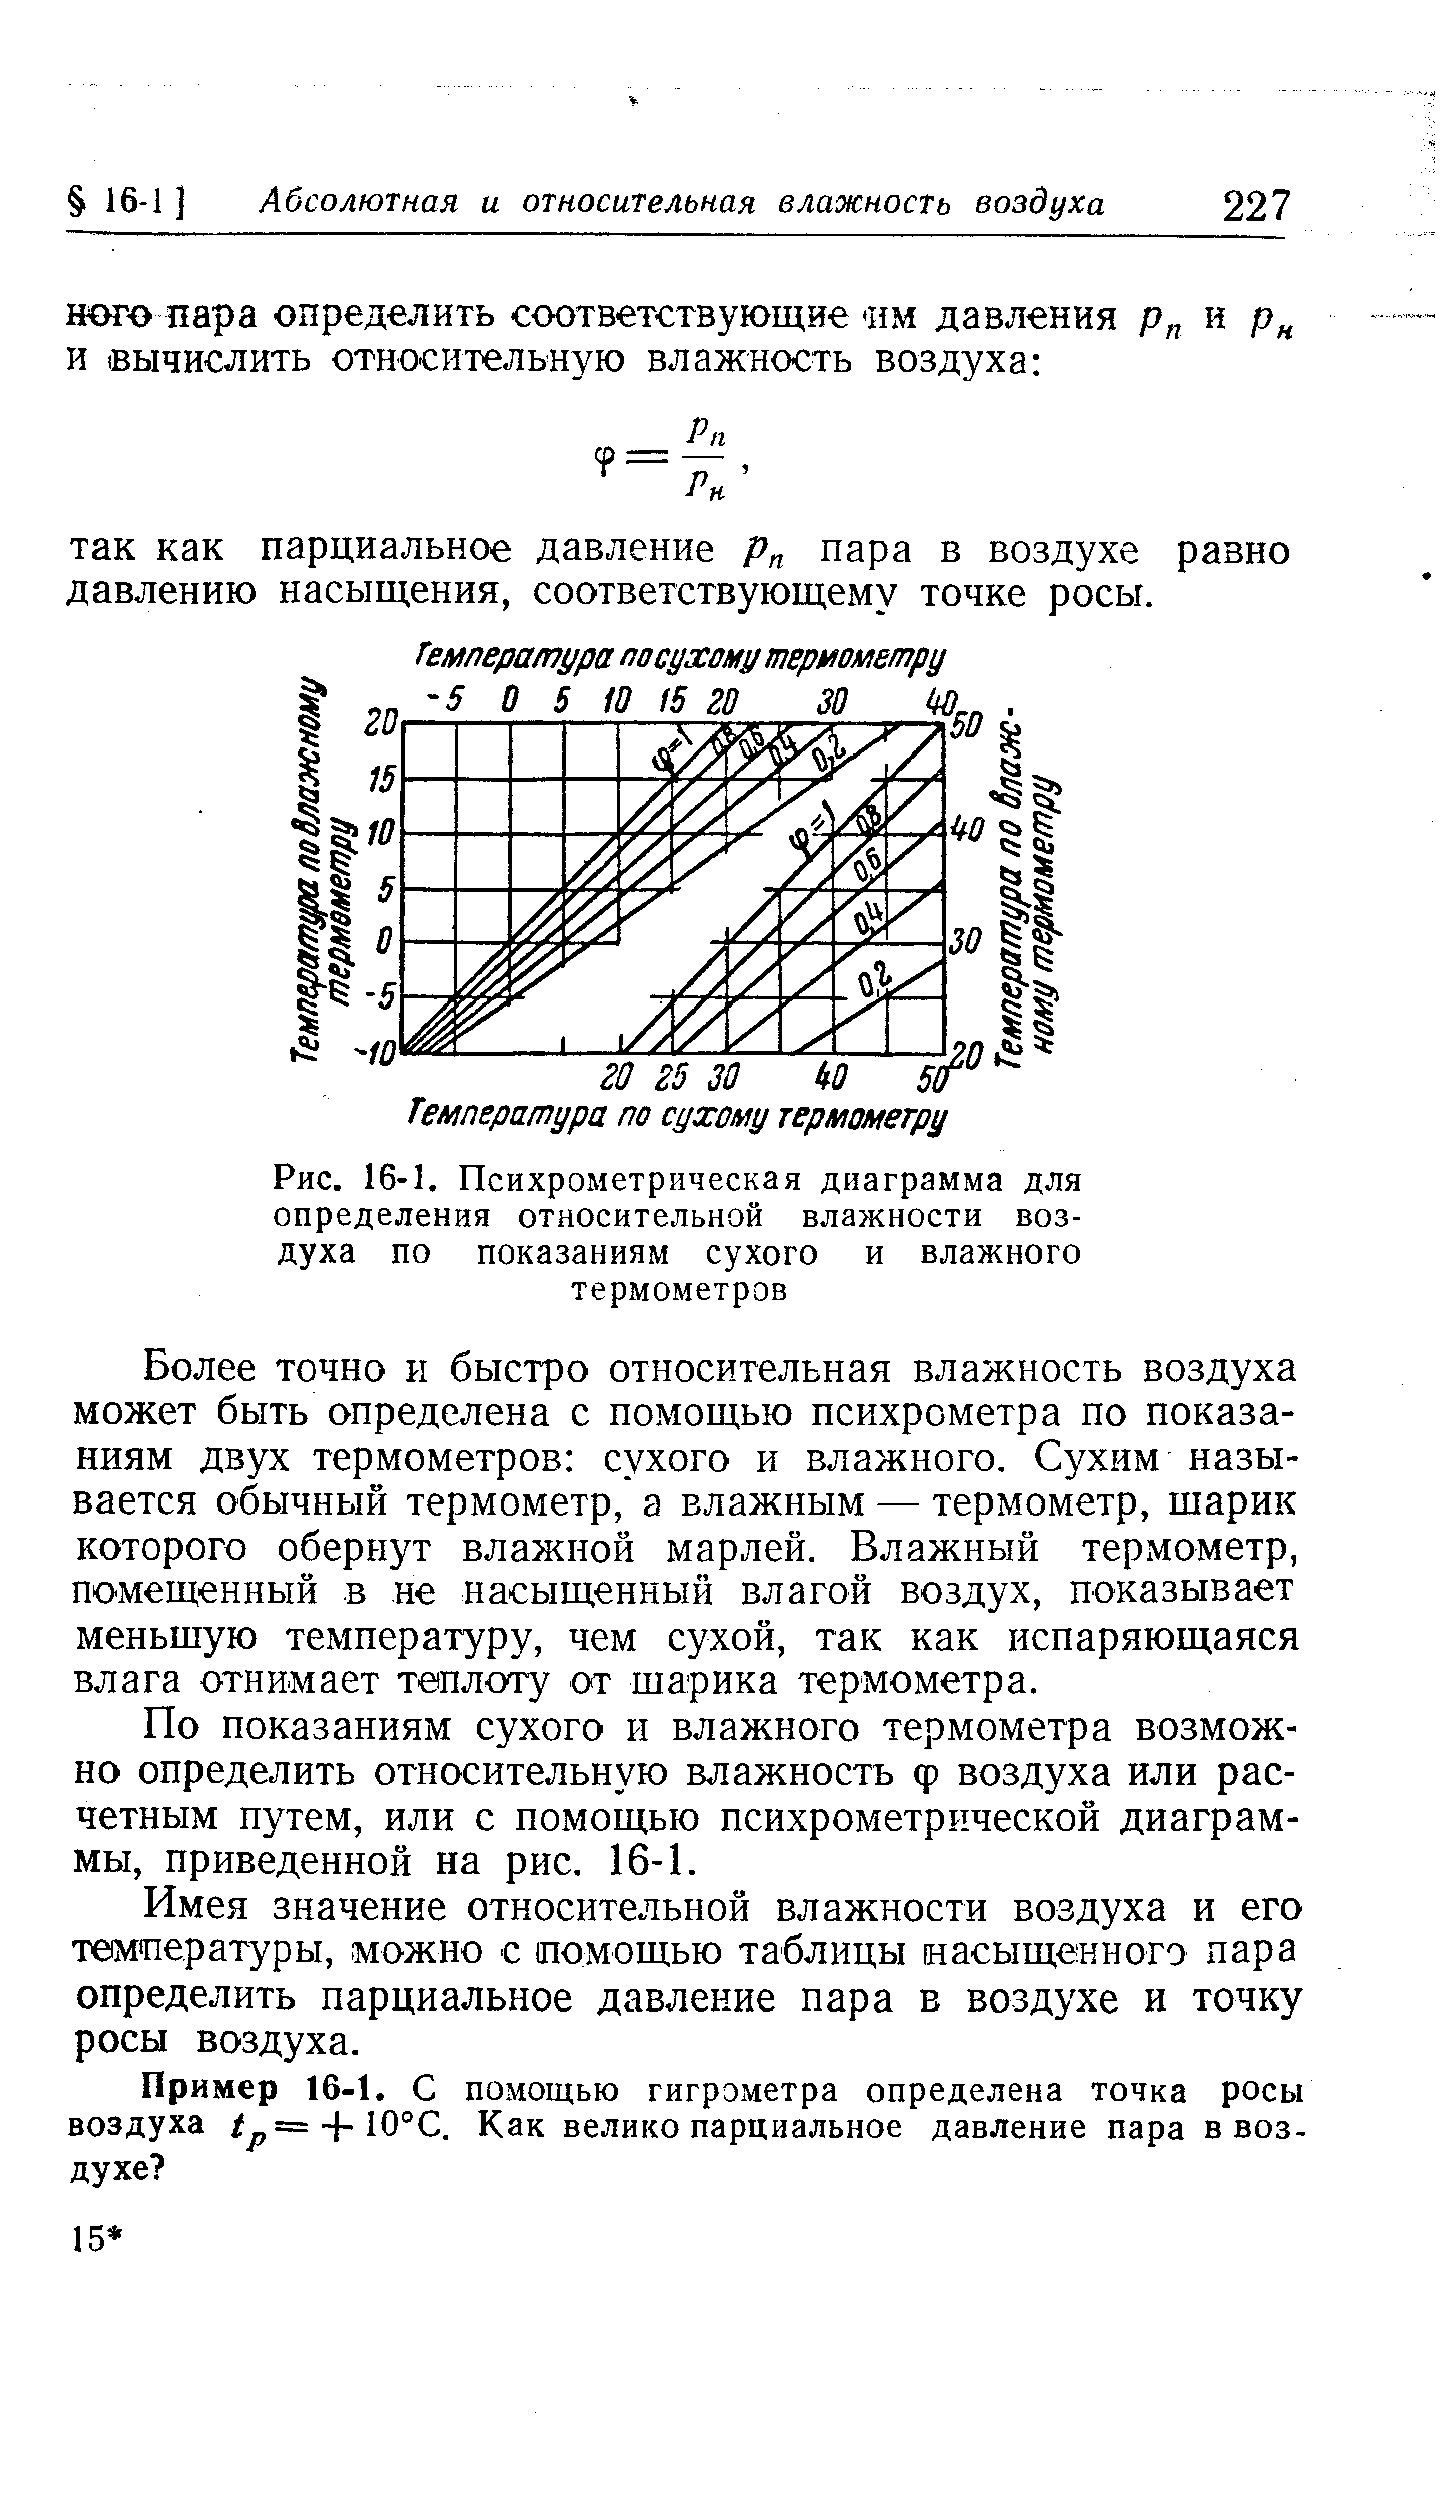 Рис. 16-1. Психрометрическая диаграмма для определения относительной влажности воздуха по показаниям сухого и влажного термометров
